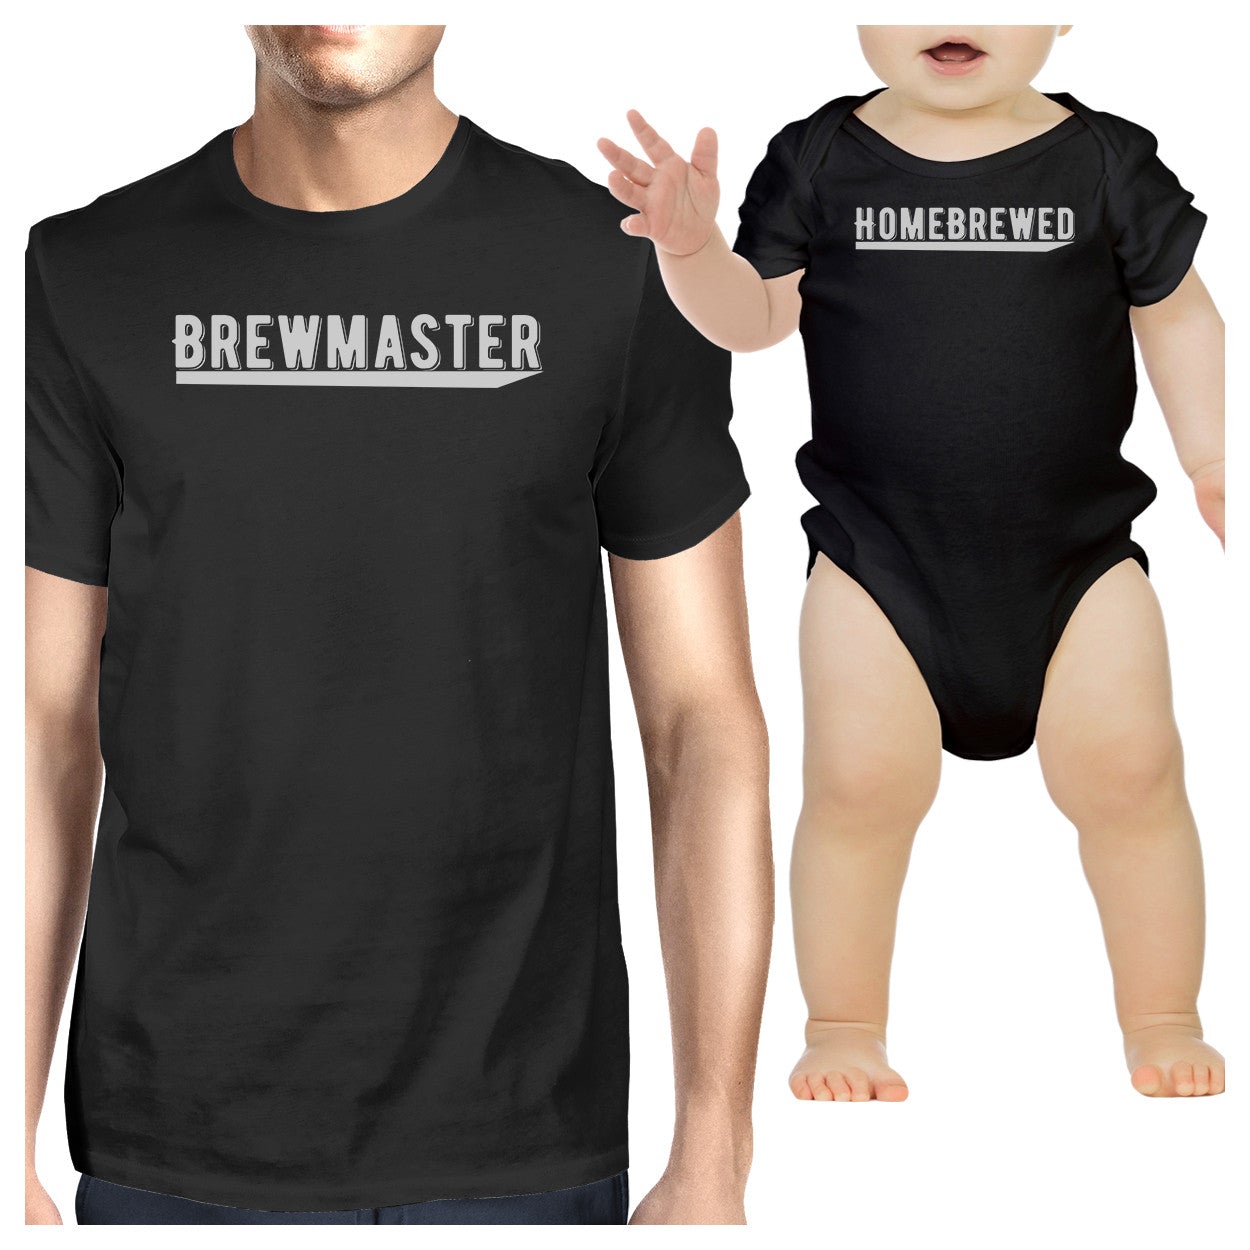 Brewmaster Homebrewed Dad and Baby Matching Black Shirts